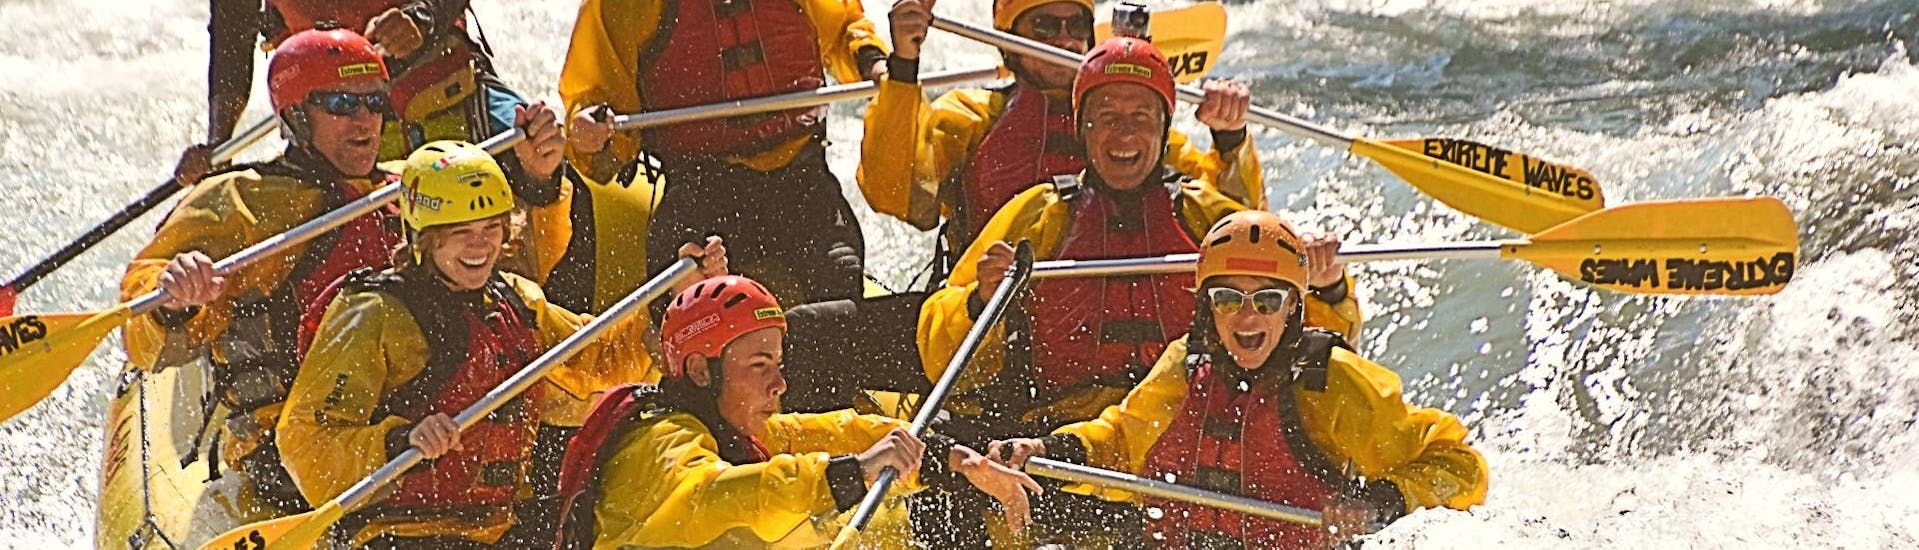 I partecipanti stanno vivendo un'esperienza all'insegna dell'adrenalina durante il Rafting sul fiume Noce in Val di Sole con Extreme Waves.